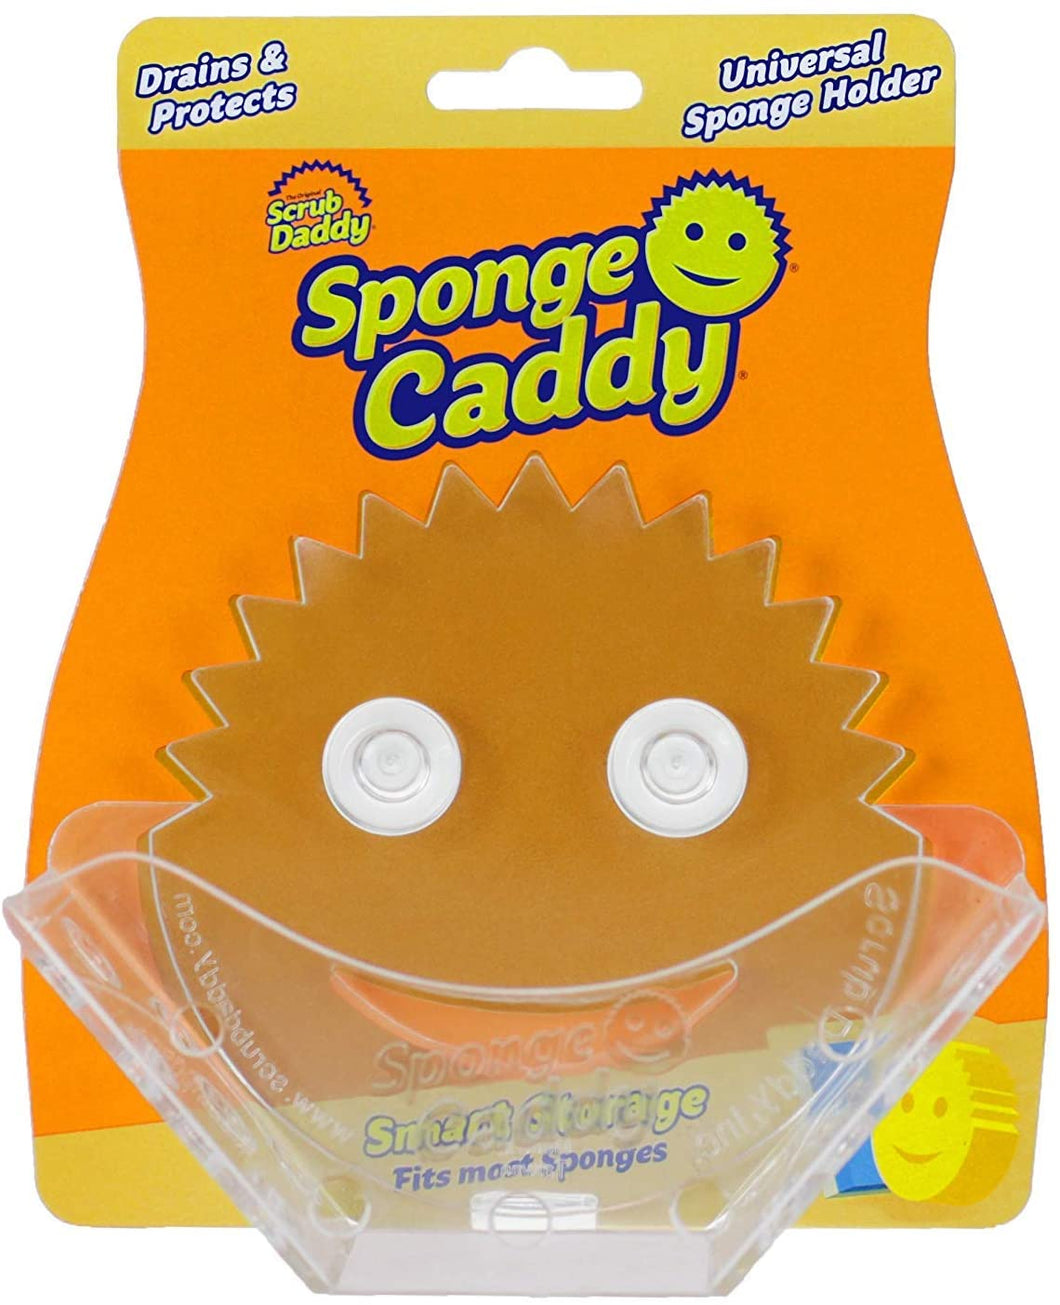 Sponge Caddy Scrub Daddy Accessory